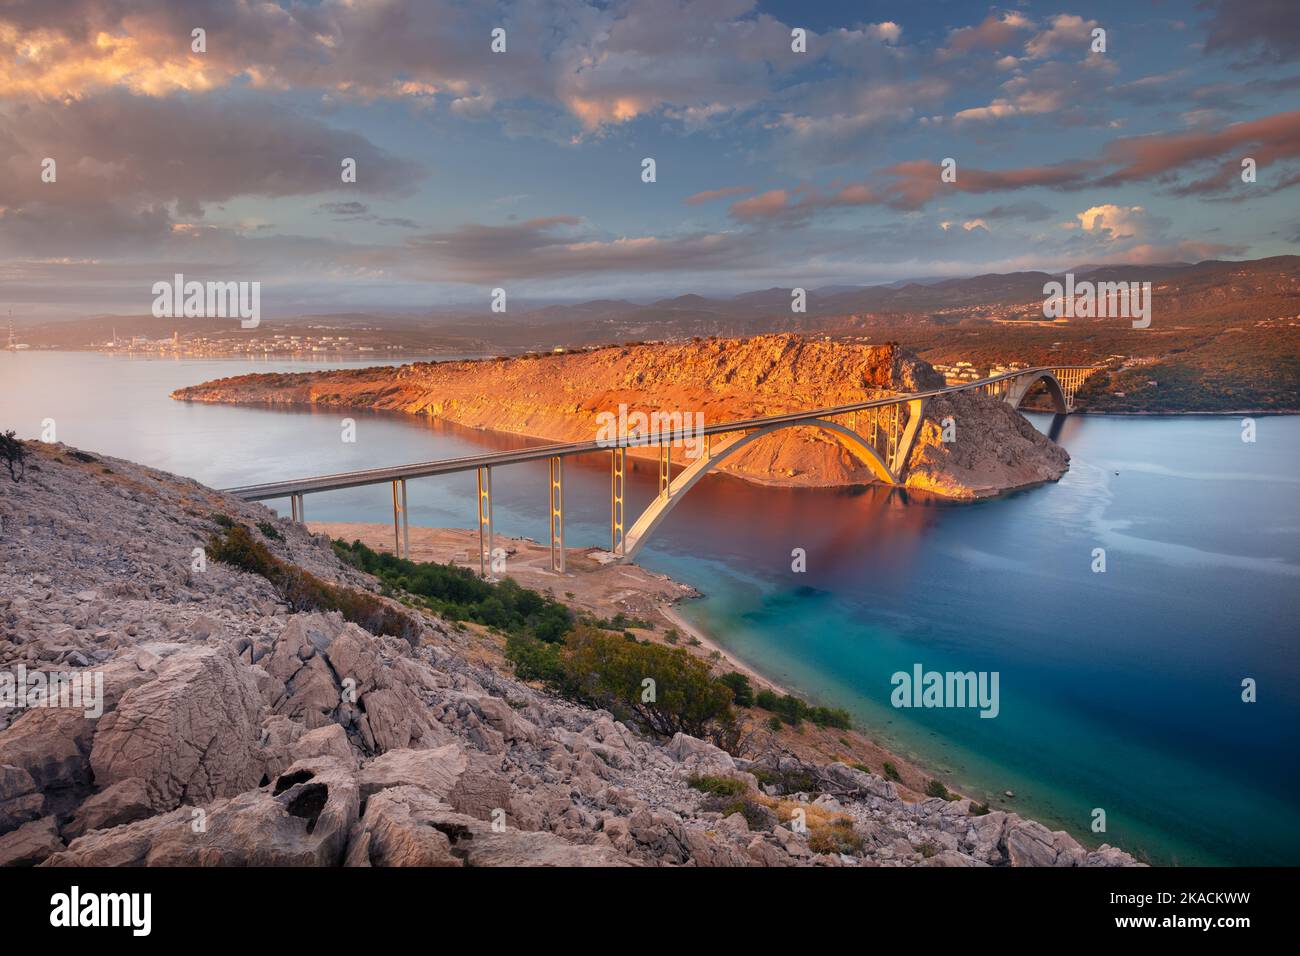 Ponte di Krk, Croazia. Immagine del Ponte di Krk che collega l'isola croata di Krk con la terraferma al bellissimo tramonto estivo. Foto Stock